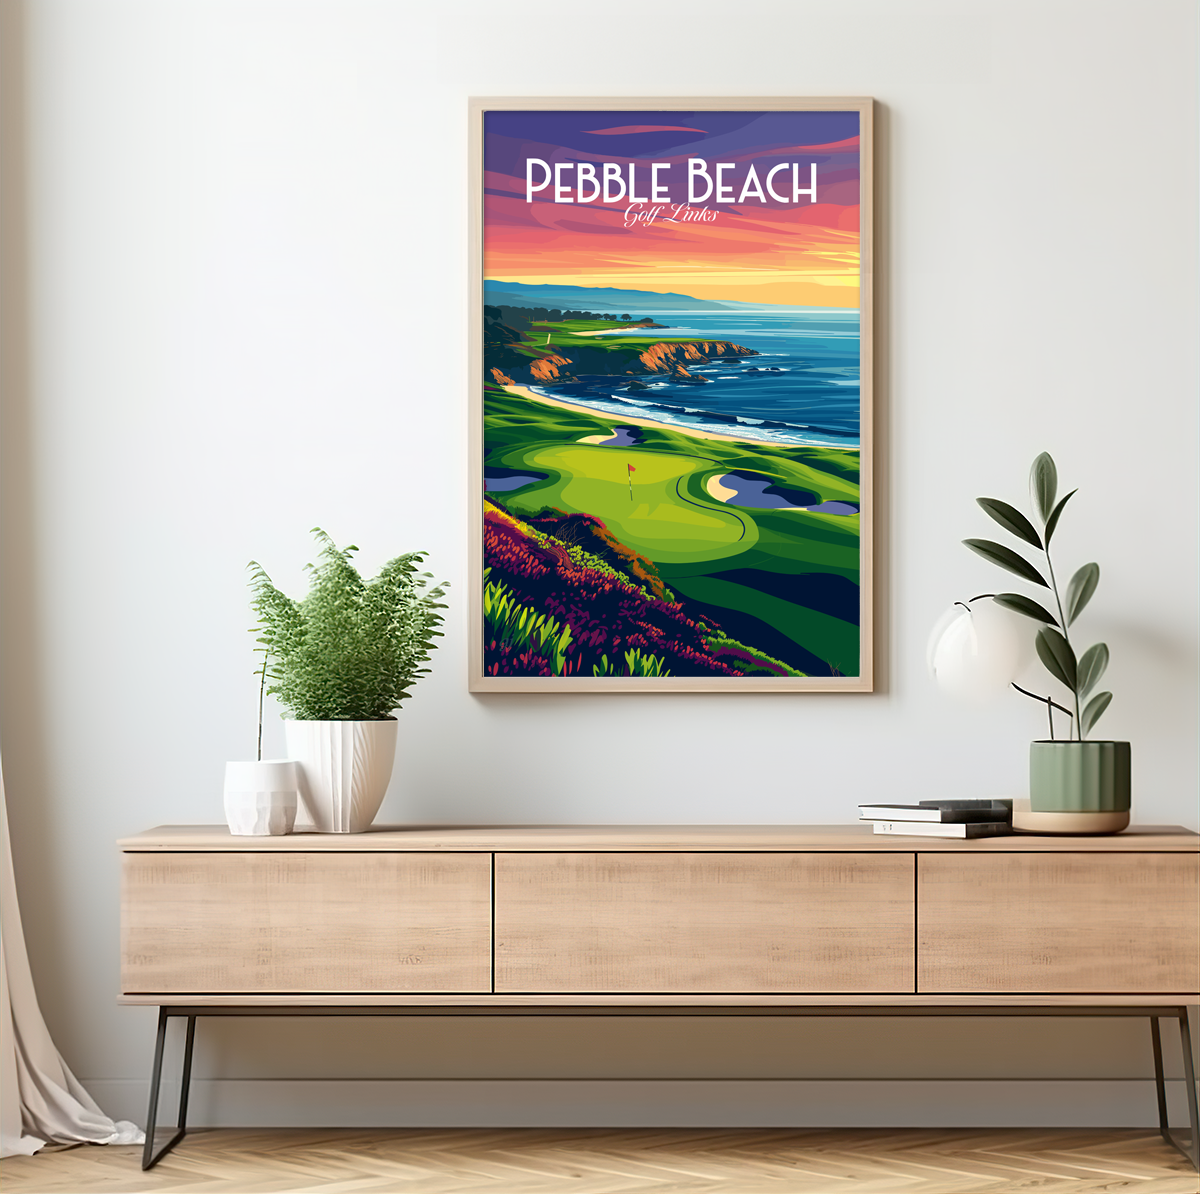 Pebble Beach poster by bon voyage design